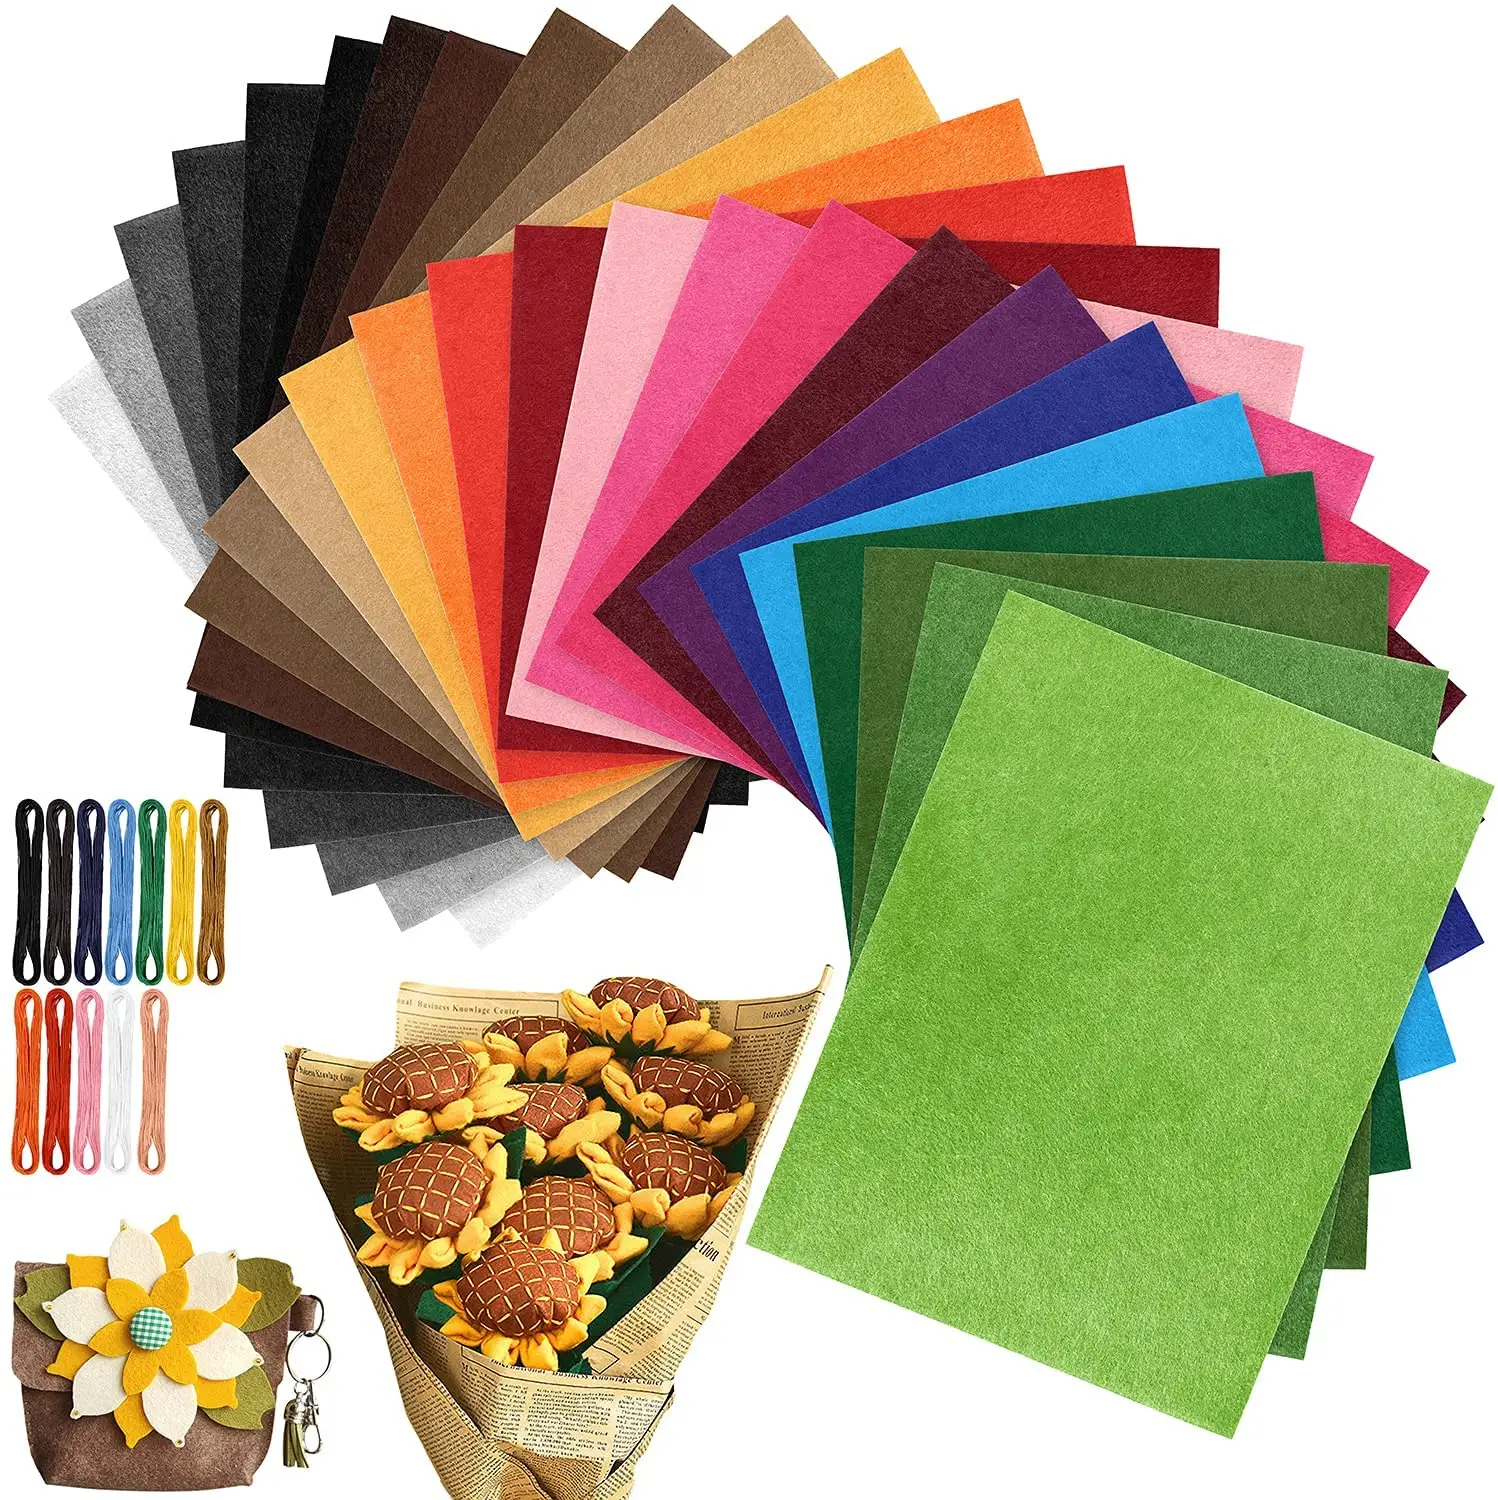 Etsy billig Bulk kaufen Vielfalt Farben vor geschnittenes Rechteck steife harte weiche Wolle Filz Stoff Blätter Papier für Kunst handwerk